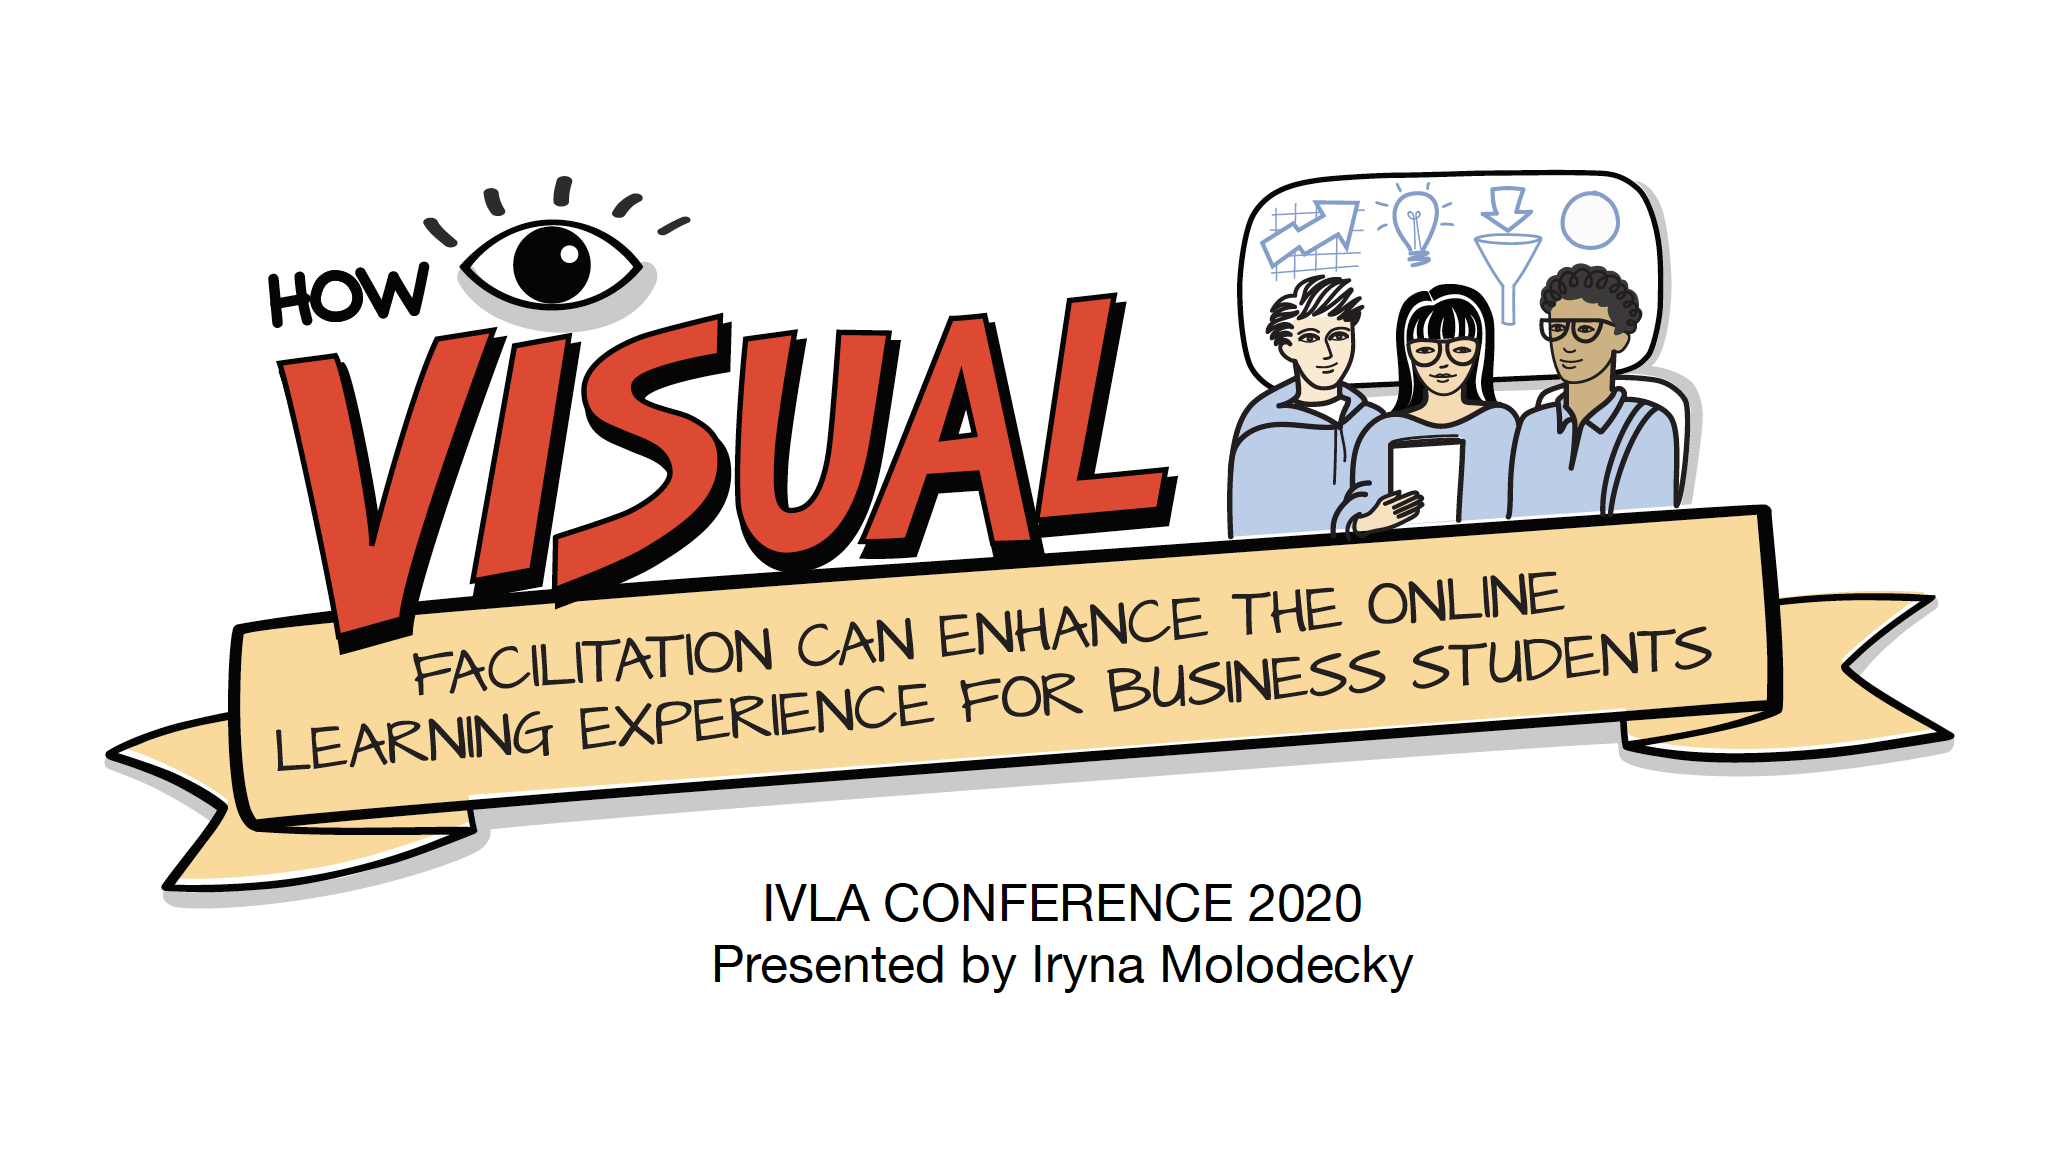 IVLA Conference 2020 Presentation